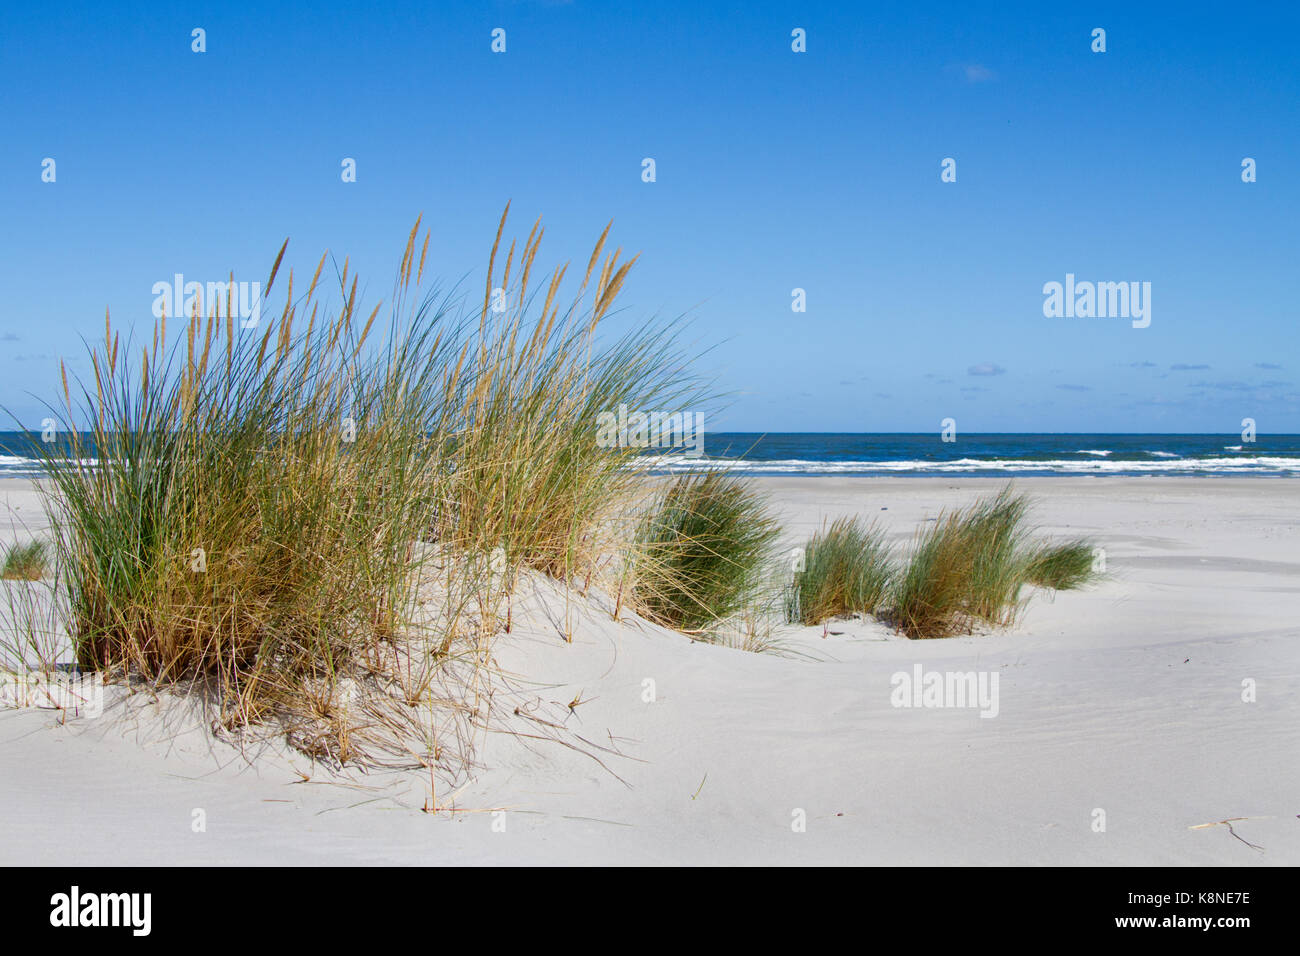 L'ammophile et la table de sable, formant un embryon de dune, la première phase de développement des dunes Banque D'Images